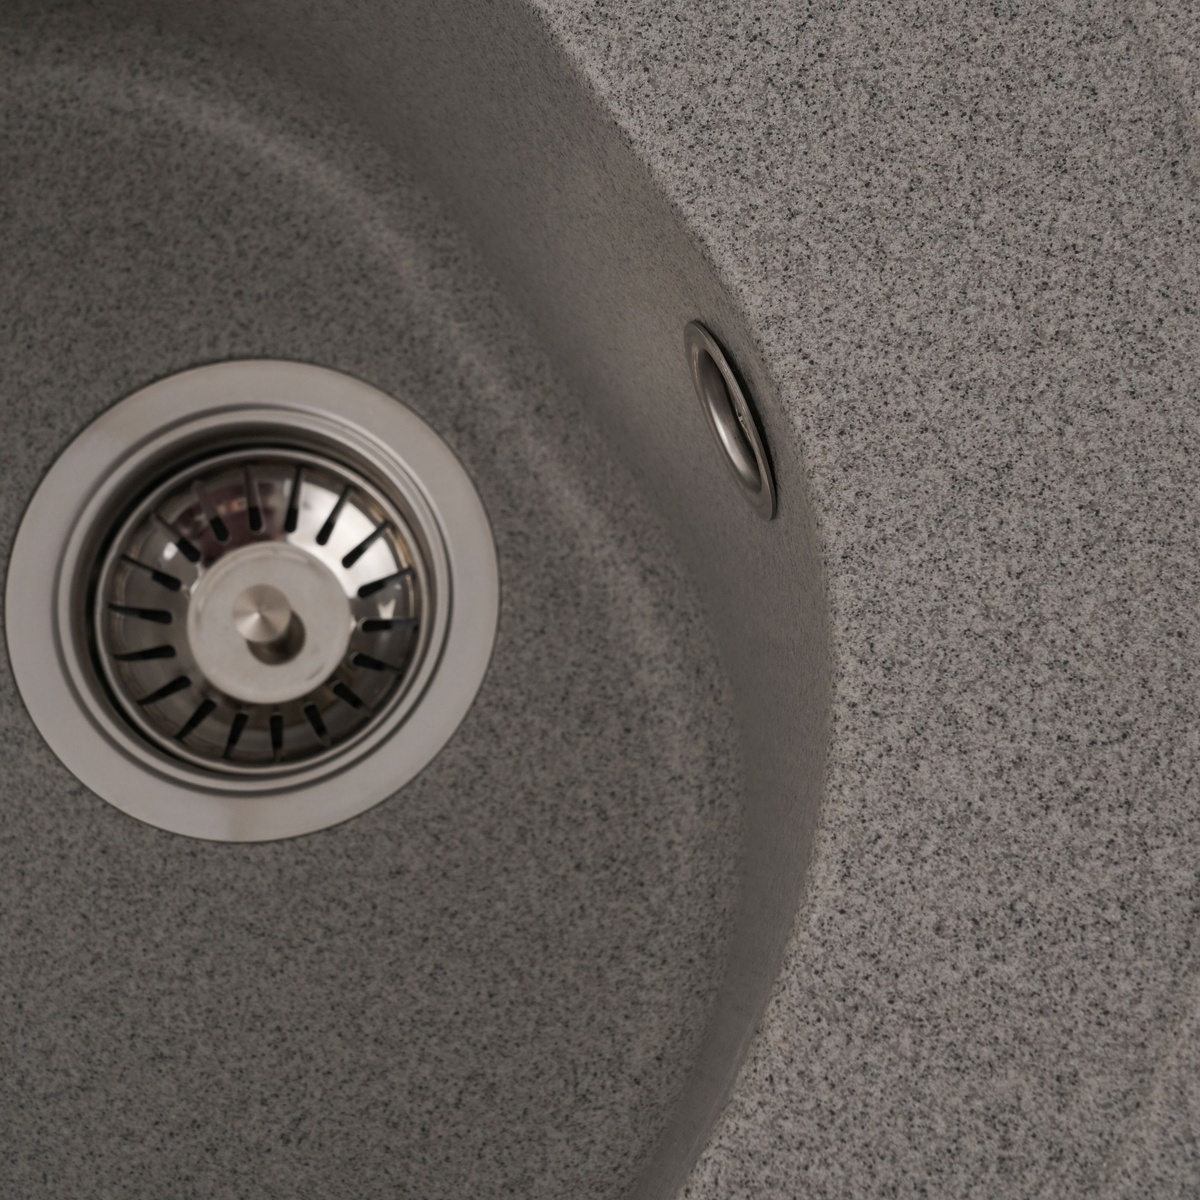 Мийка для кухні гранітна кругла PLATINUM 510 LUNA 510x510x190мм без сифону сіра PLS-A25061